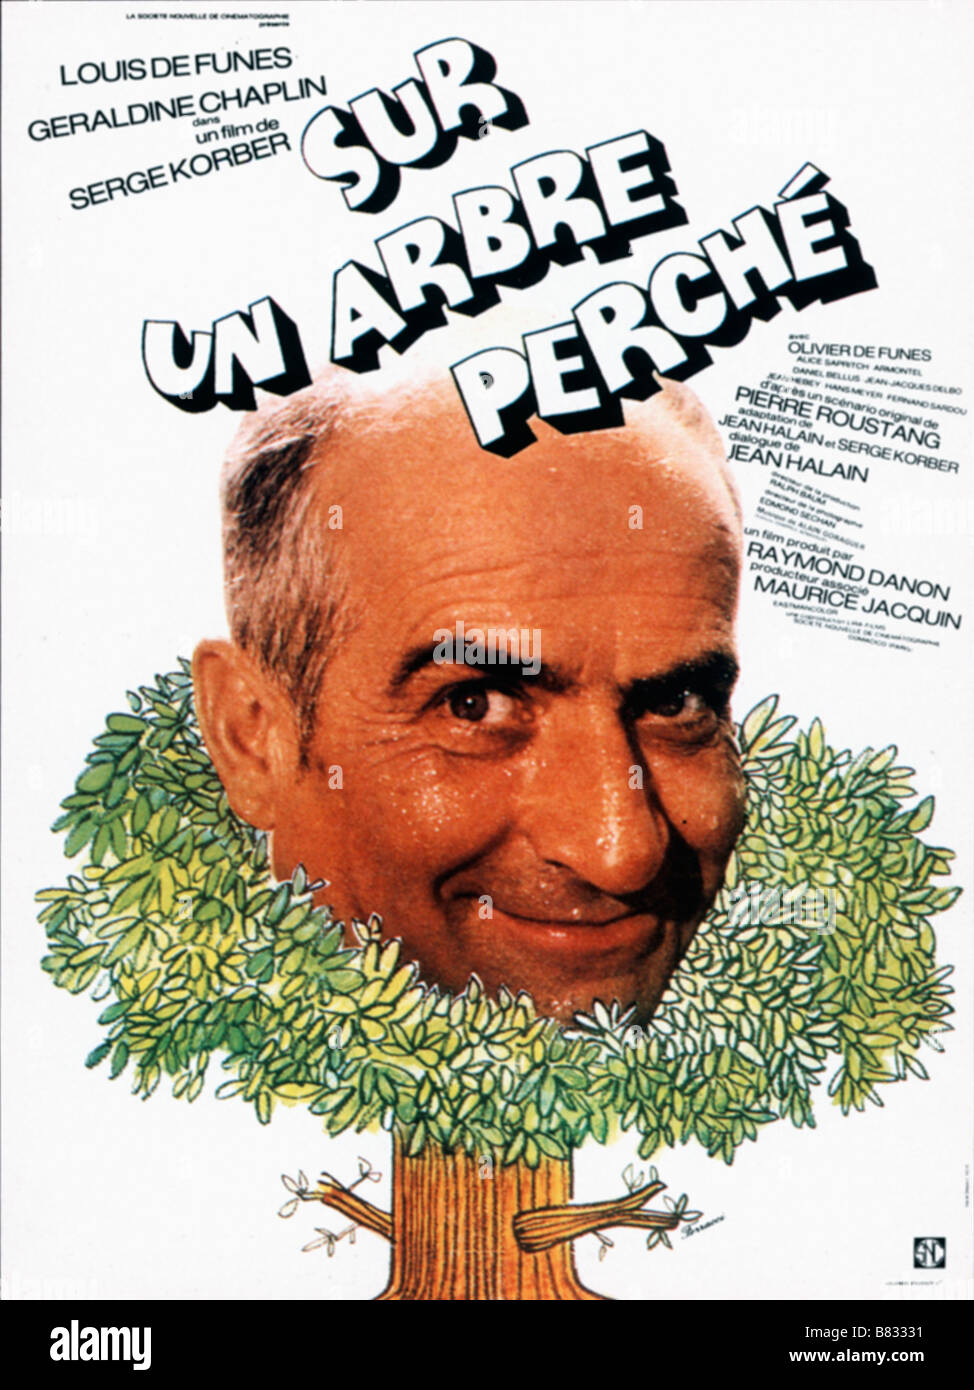 Votre dernier film visionné - Page 4 Sur-un-arbre-perch-jahr-1971-frankreich-louis-de-funs-regie-serge-korber-filmplakat-fr-b83331